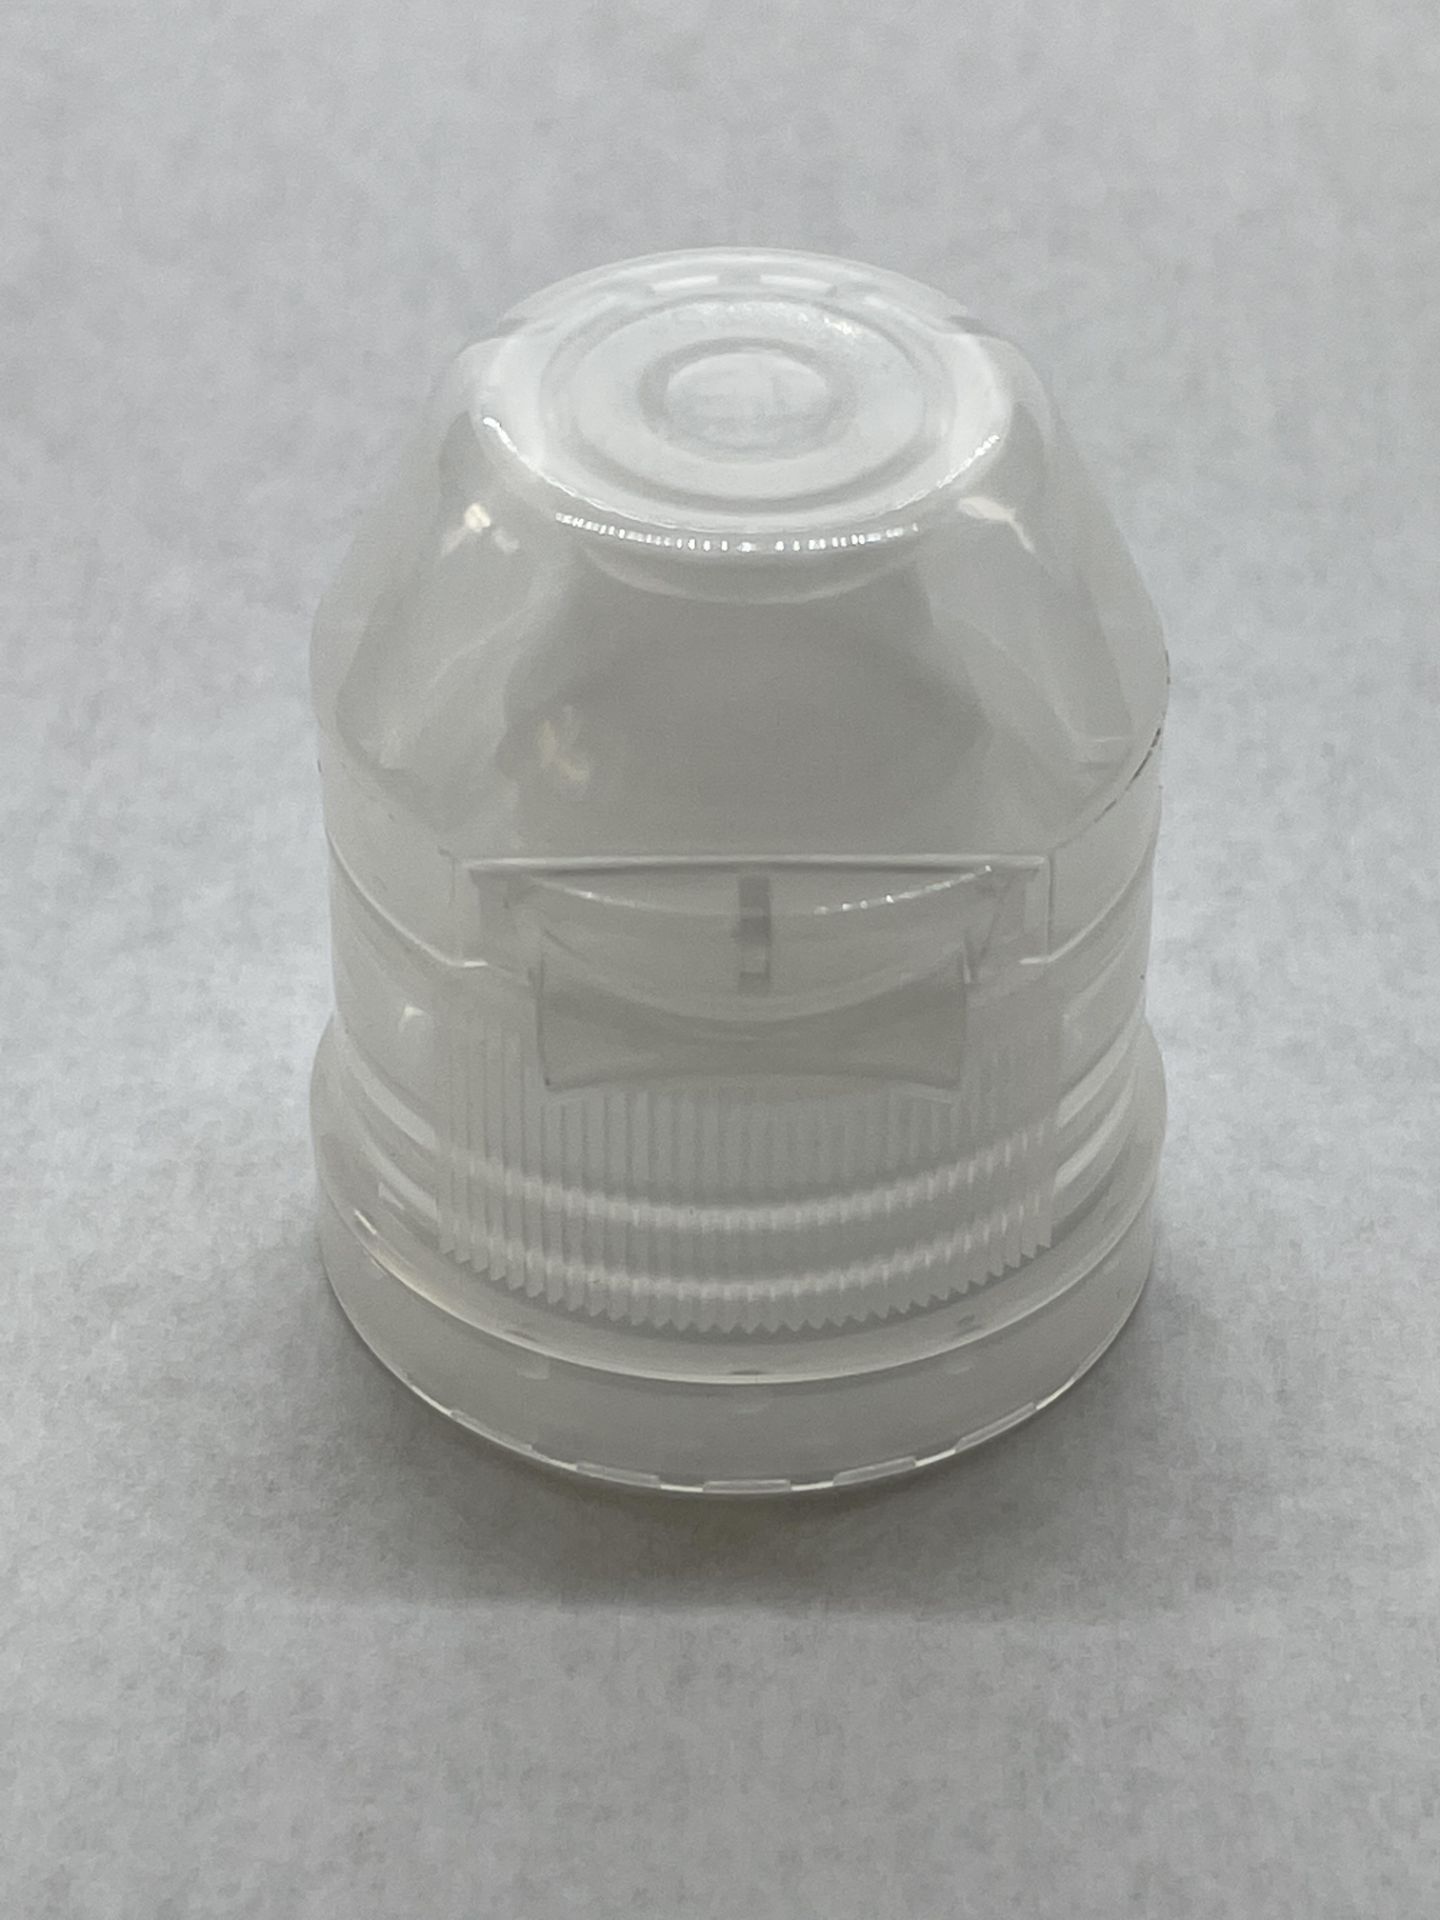 170,000 - Popular Aptar Water bottle sport cap for 16 oz bottle, 28-410 Threading - Image 6 of 6